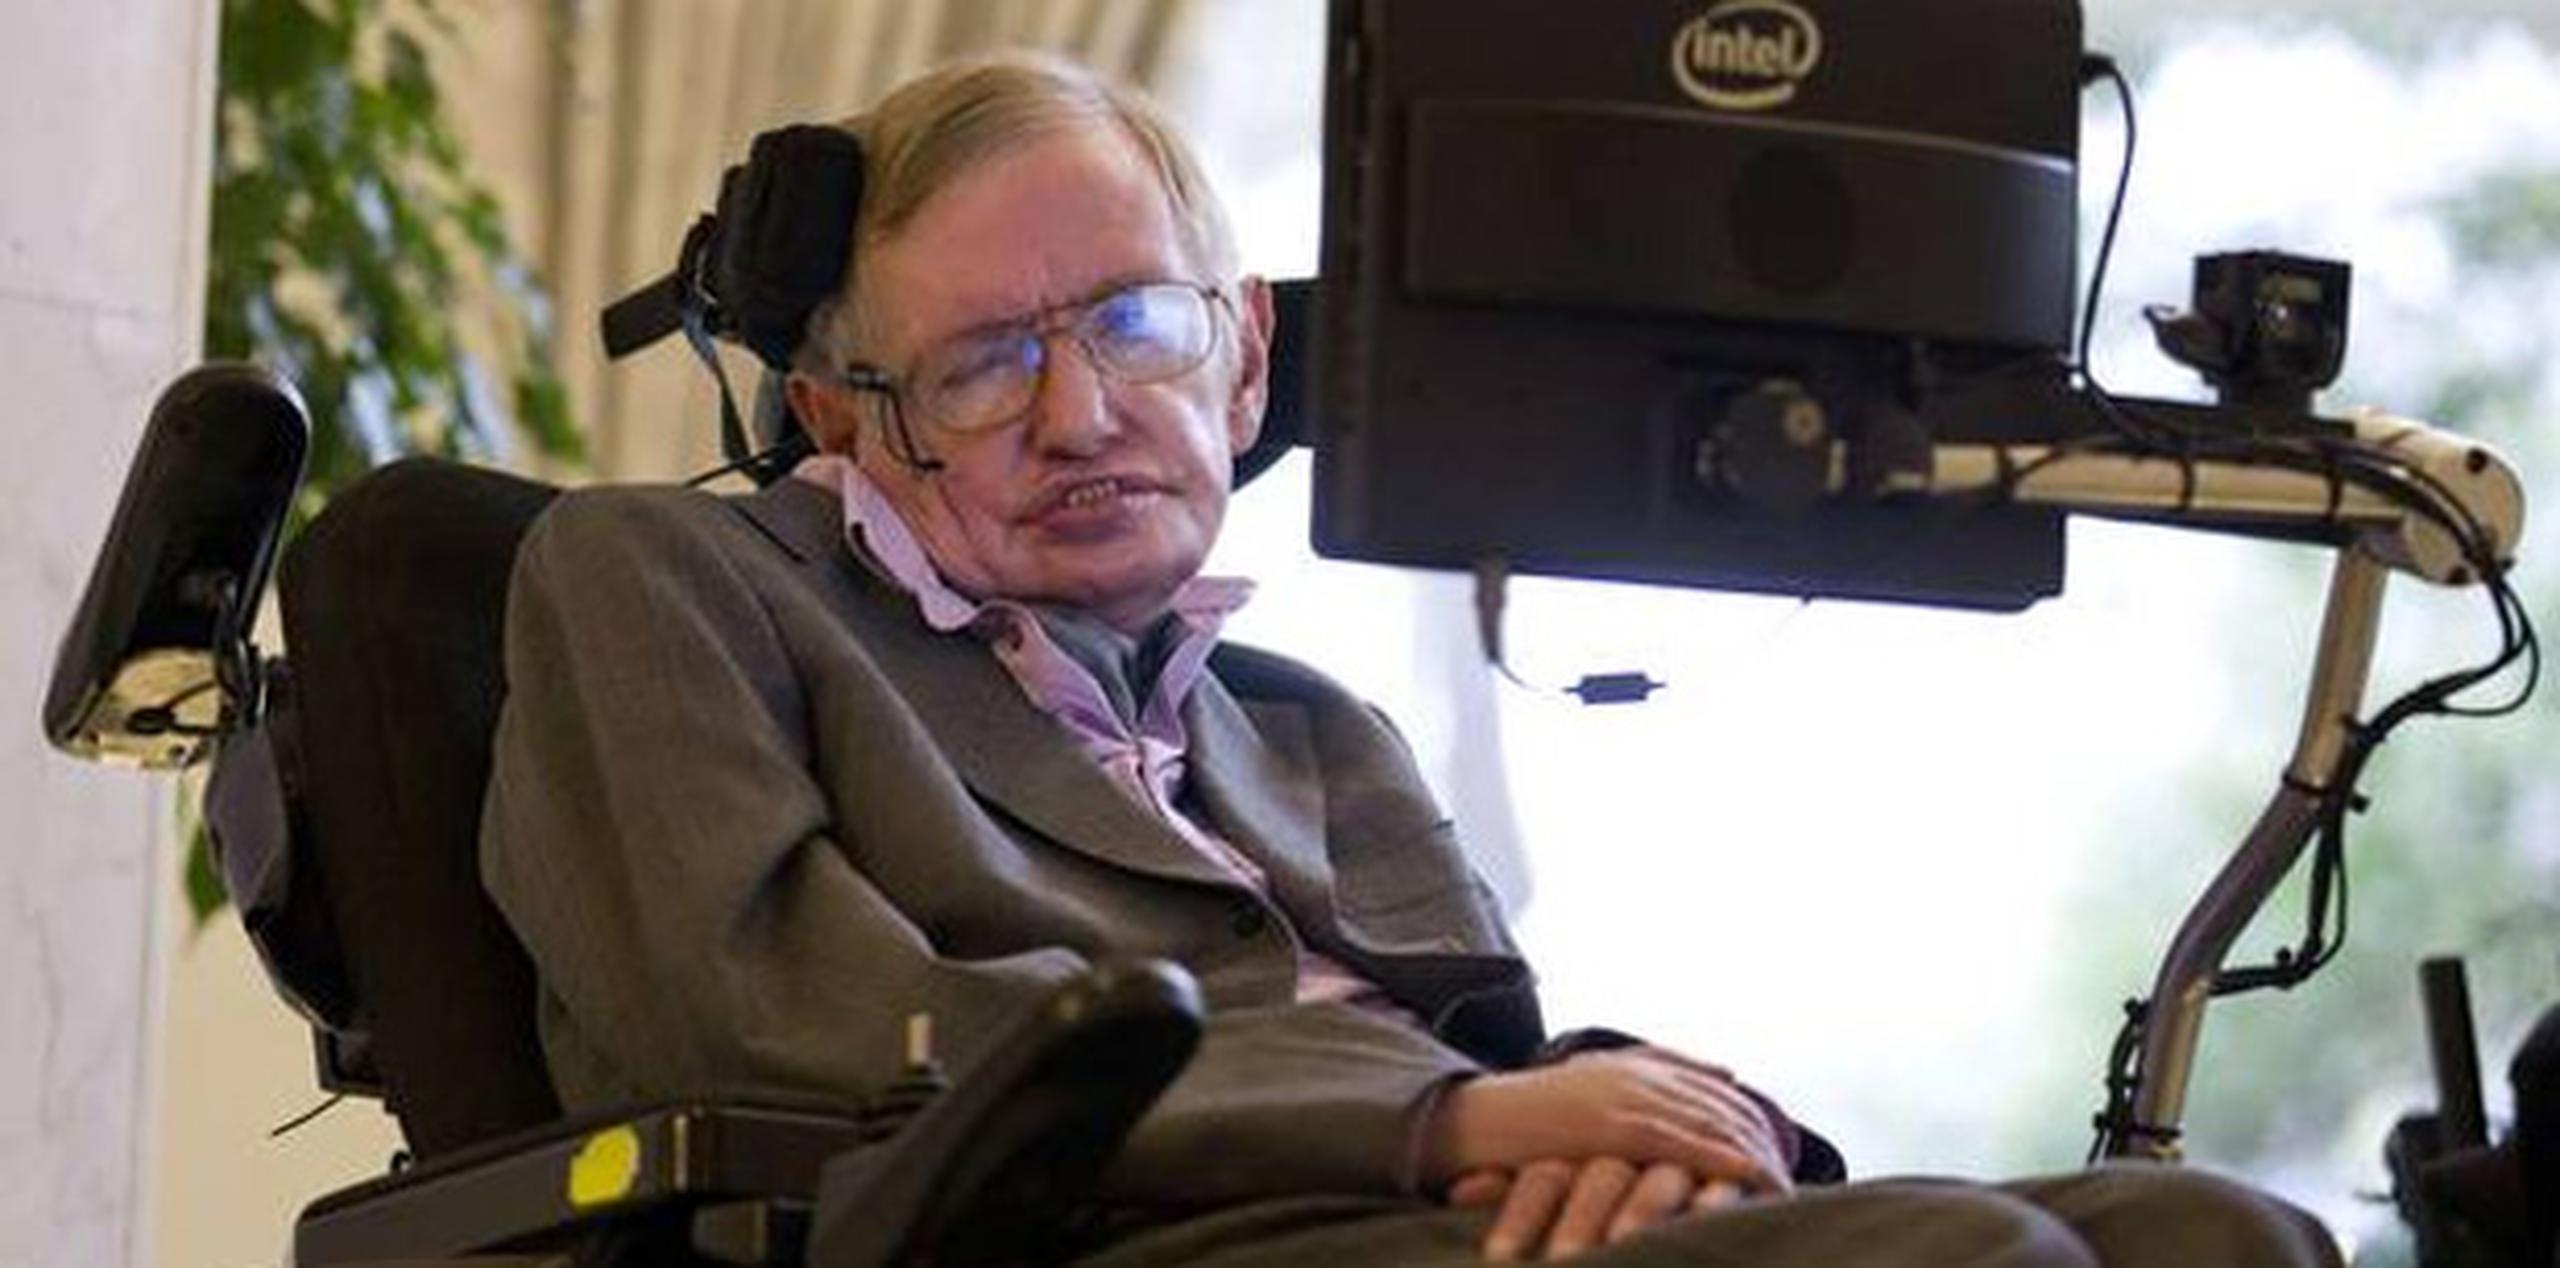 A pesar de su valoración sobre el suicidio asistido, Hawking, autor del libro "Breve historia del tiempo", puntualizó que le molestaría morir antes de descubrir y divulgar más misterios del universo. (AFP)